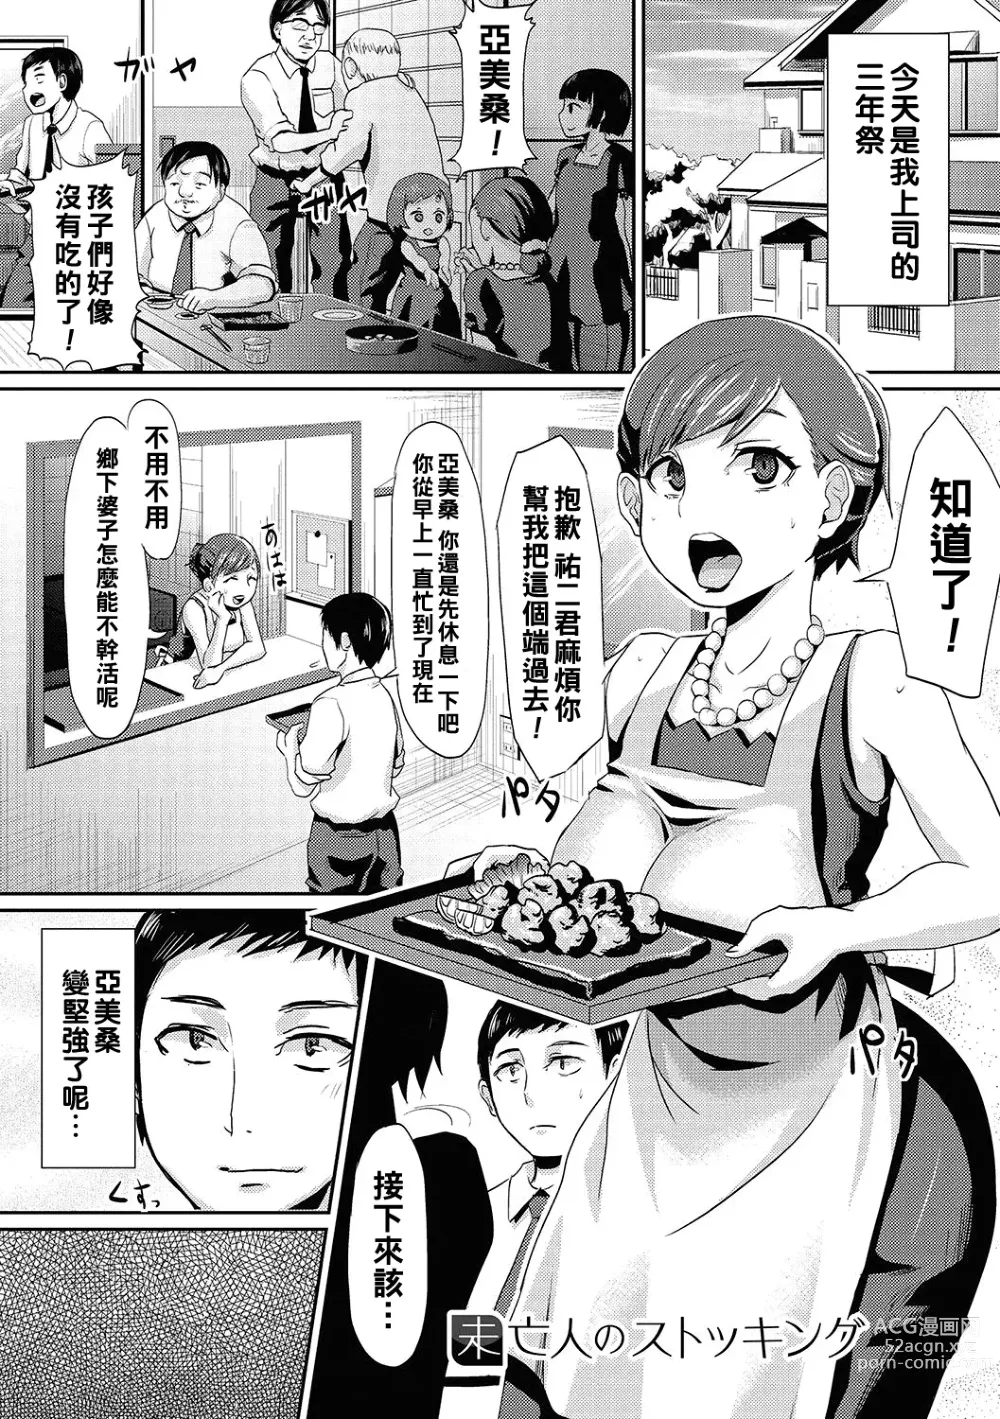 Page 1 of manga Miboujin no Stocking